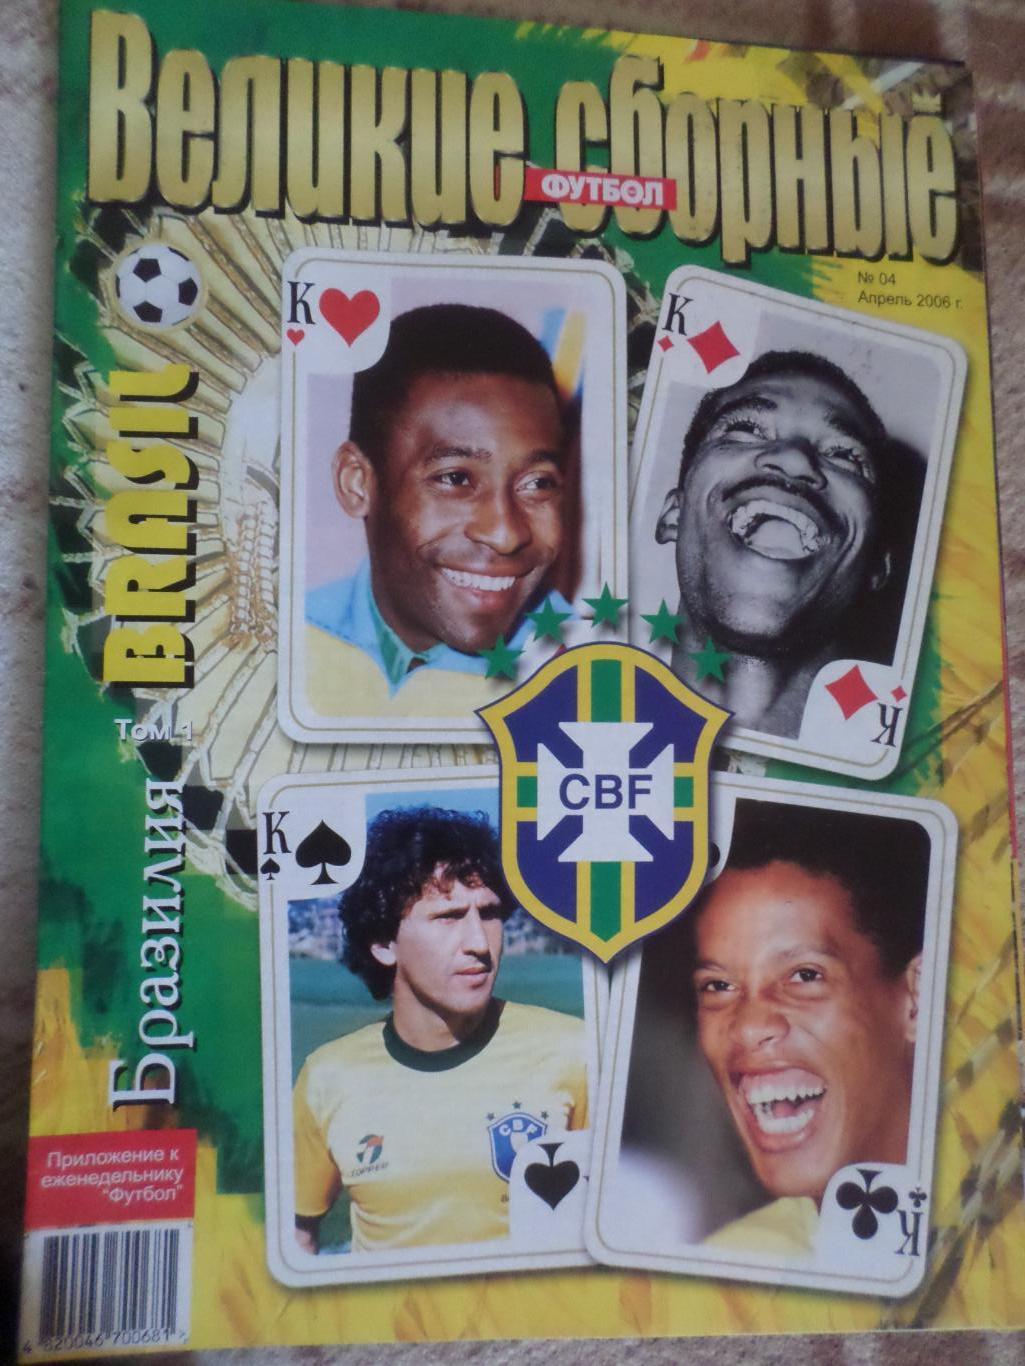 Еженедельник Футбол (Киев) Спецвыпуск 4 2006 г Великие сборные Бразилия т. 1